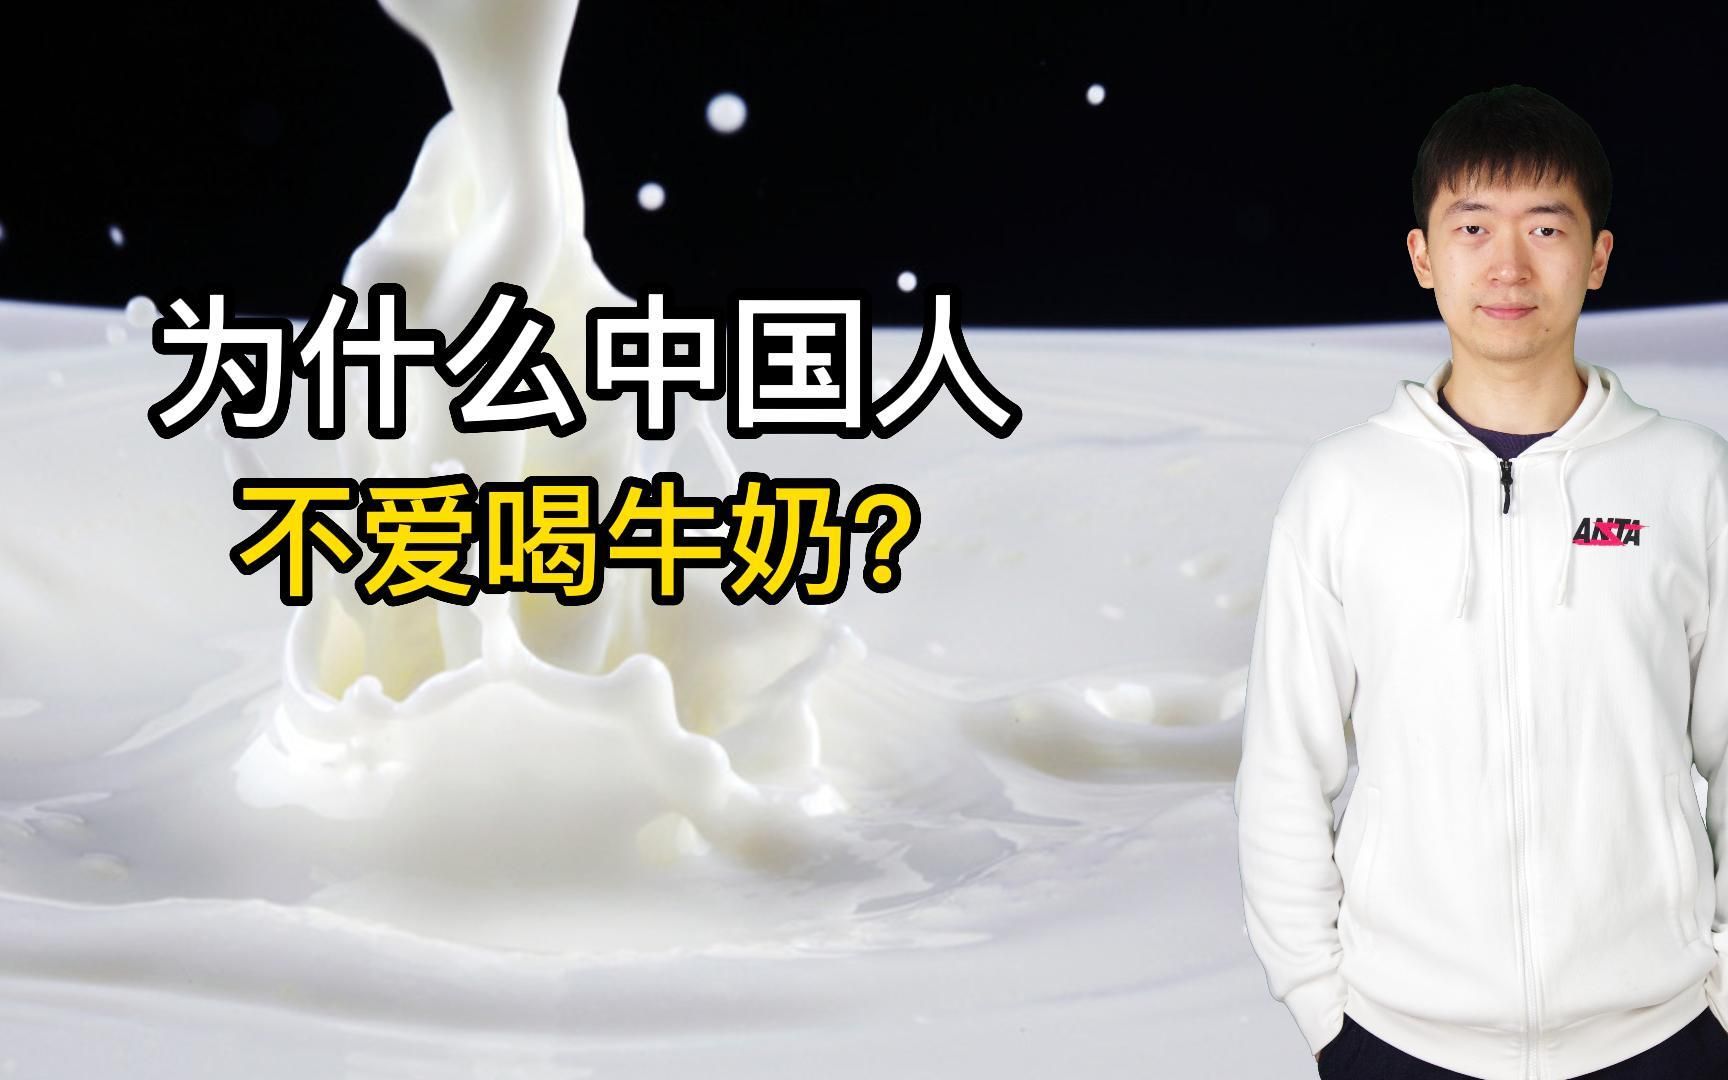 中国人真的不喜欢喝牛奶吗？我们从什么时候开始喝牛奶的？